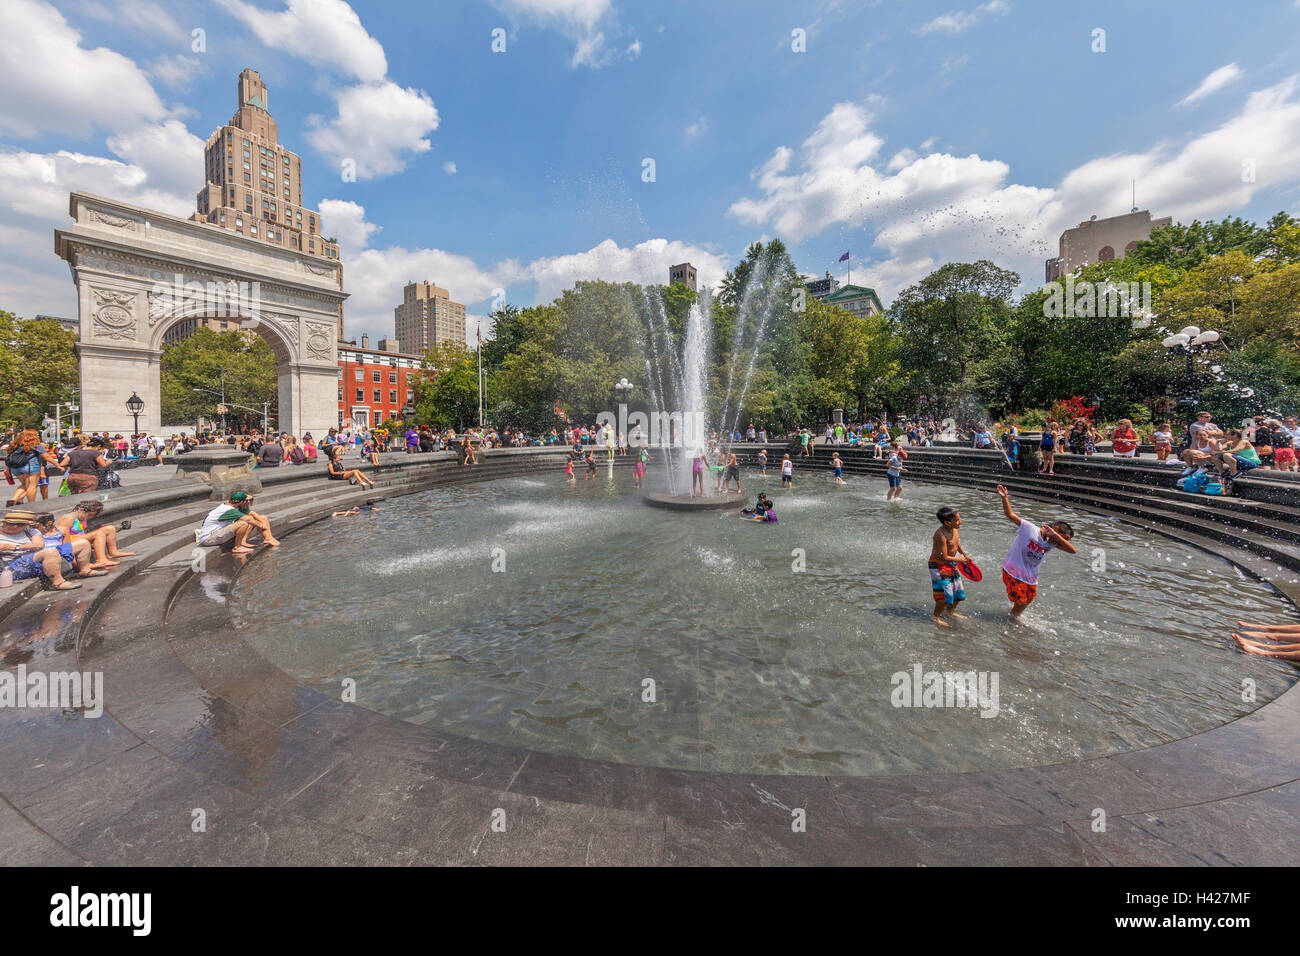 L'Arche de Washington Square Park, à New York et des personnes jouant dans l'eau de la fontaine. Banque D'Images